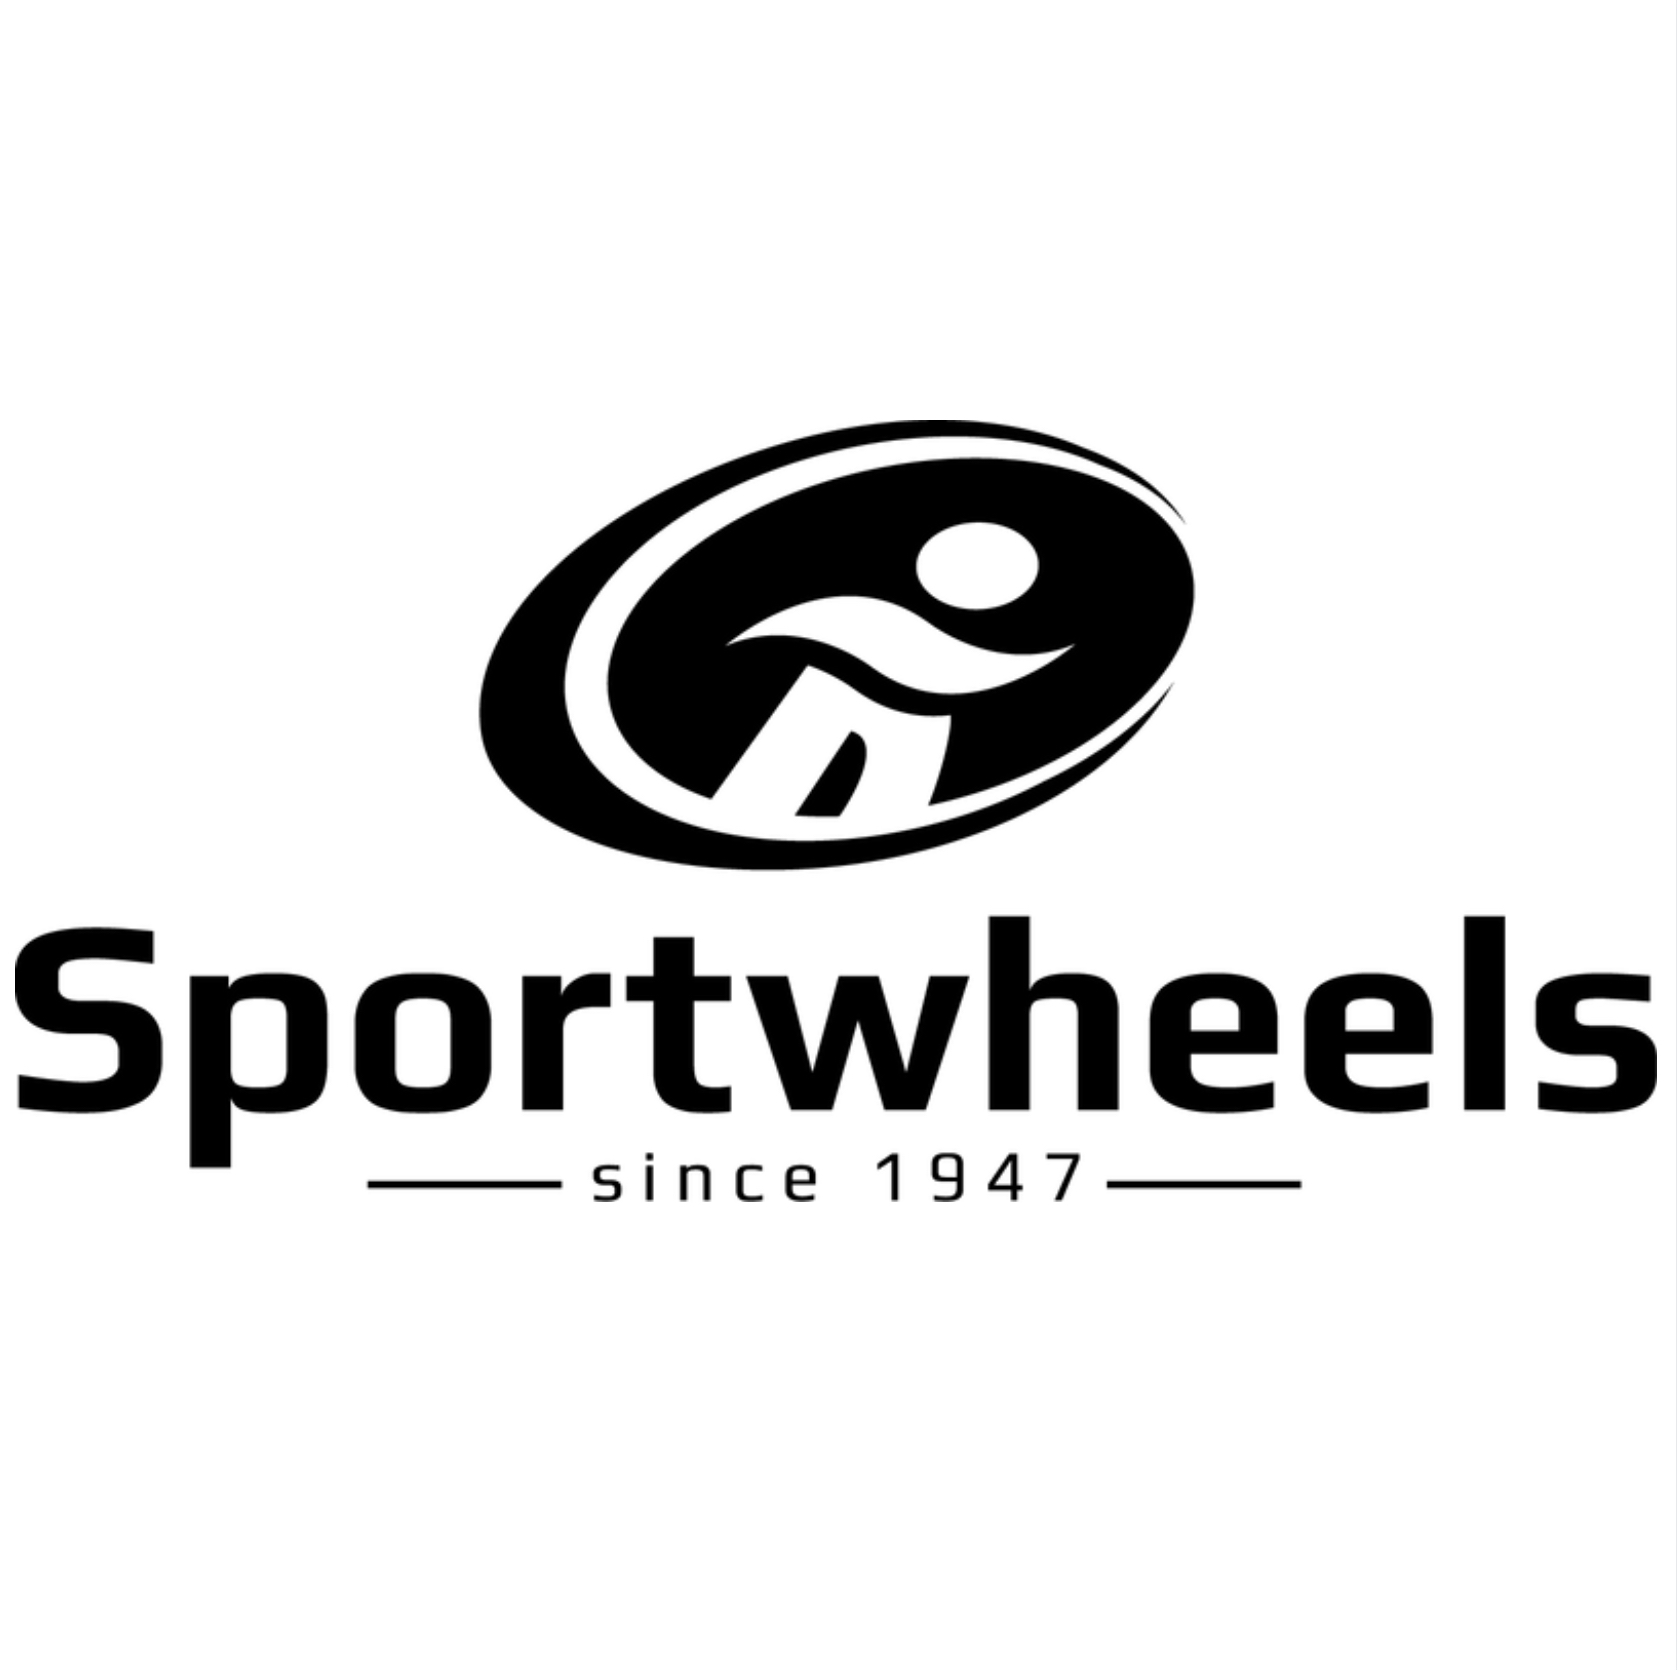 Sportwheels